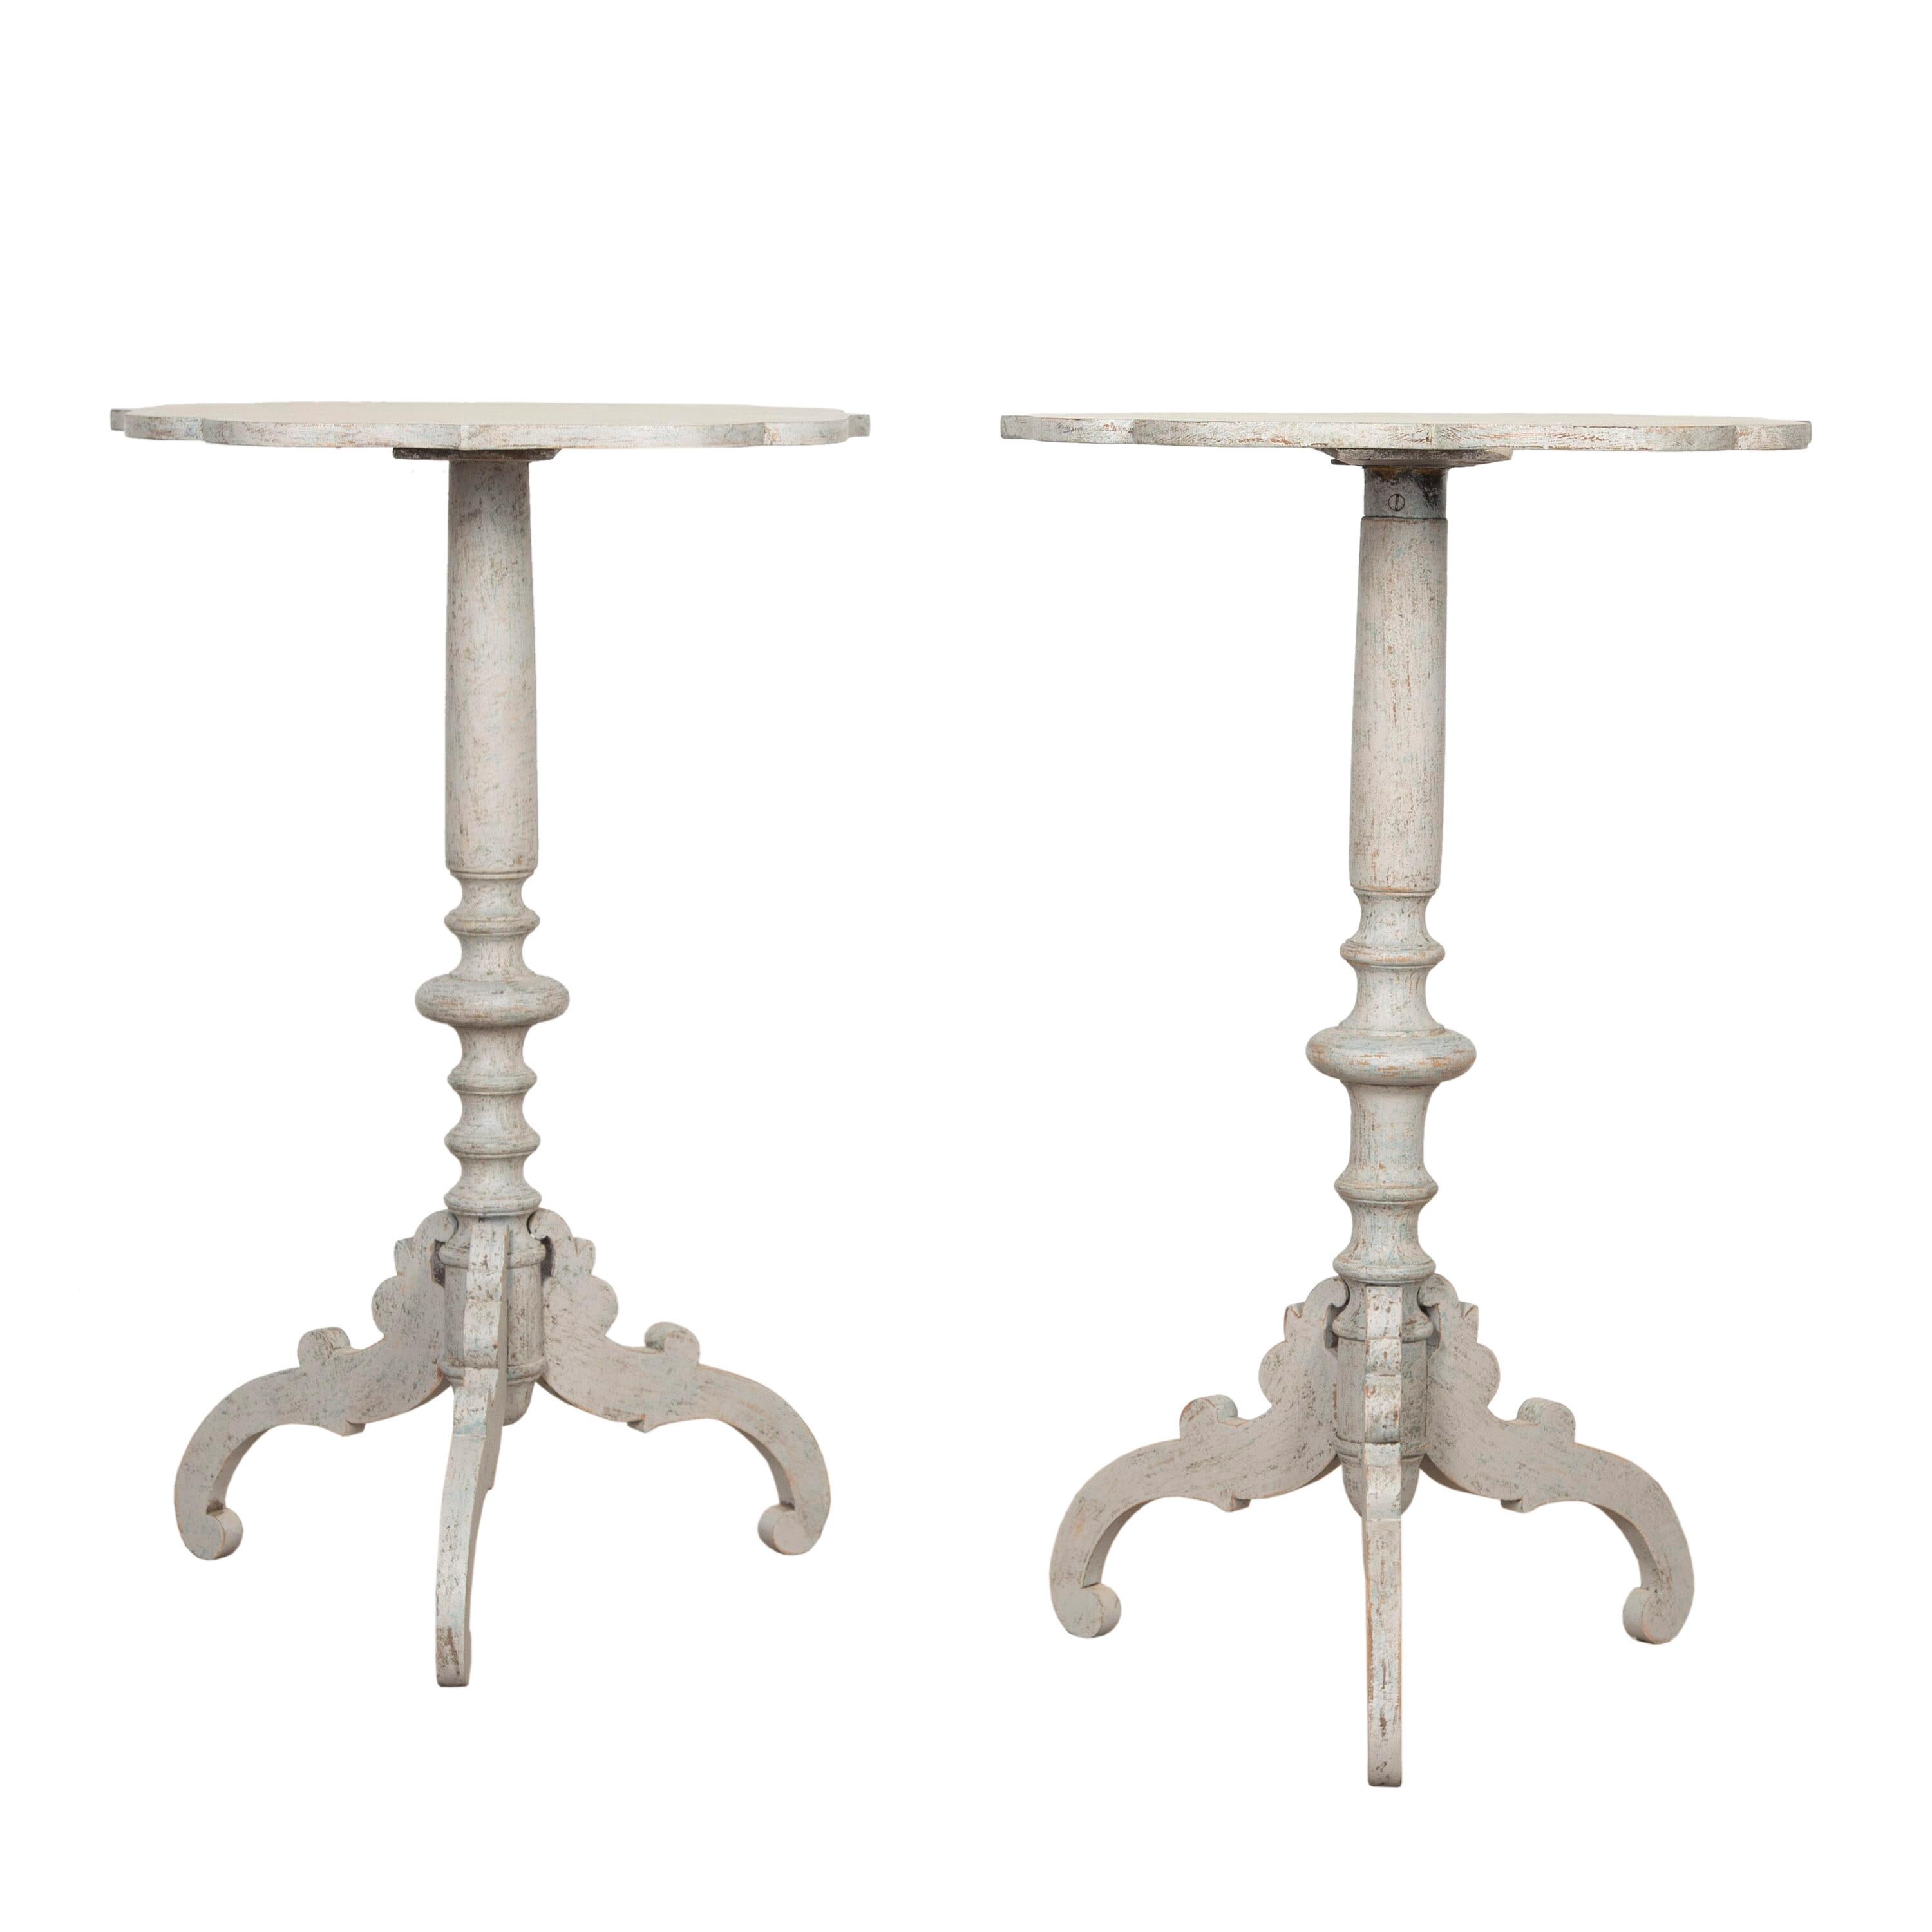 Paar schwedische Tische des 19. Jahrhunderts. Diese wundervollen Tische haben dekorative Dreibeinfüße und Stiele, die wunderschön gedreht wurden, um Säulen darzustellen. Beide haben dekorative Oberteile mit leicht gebördeltem Rand! 
Sie wurden mit